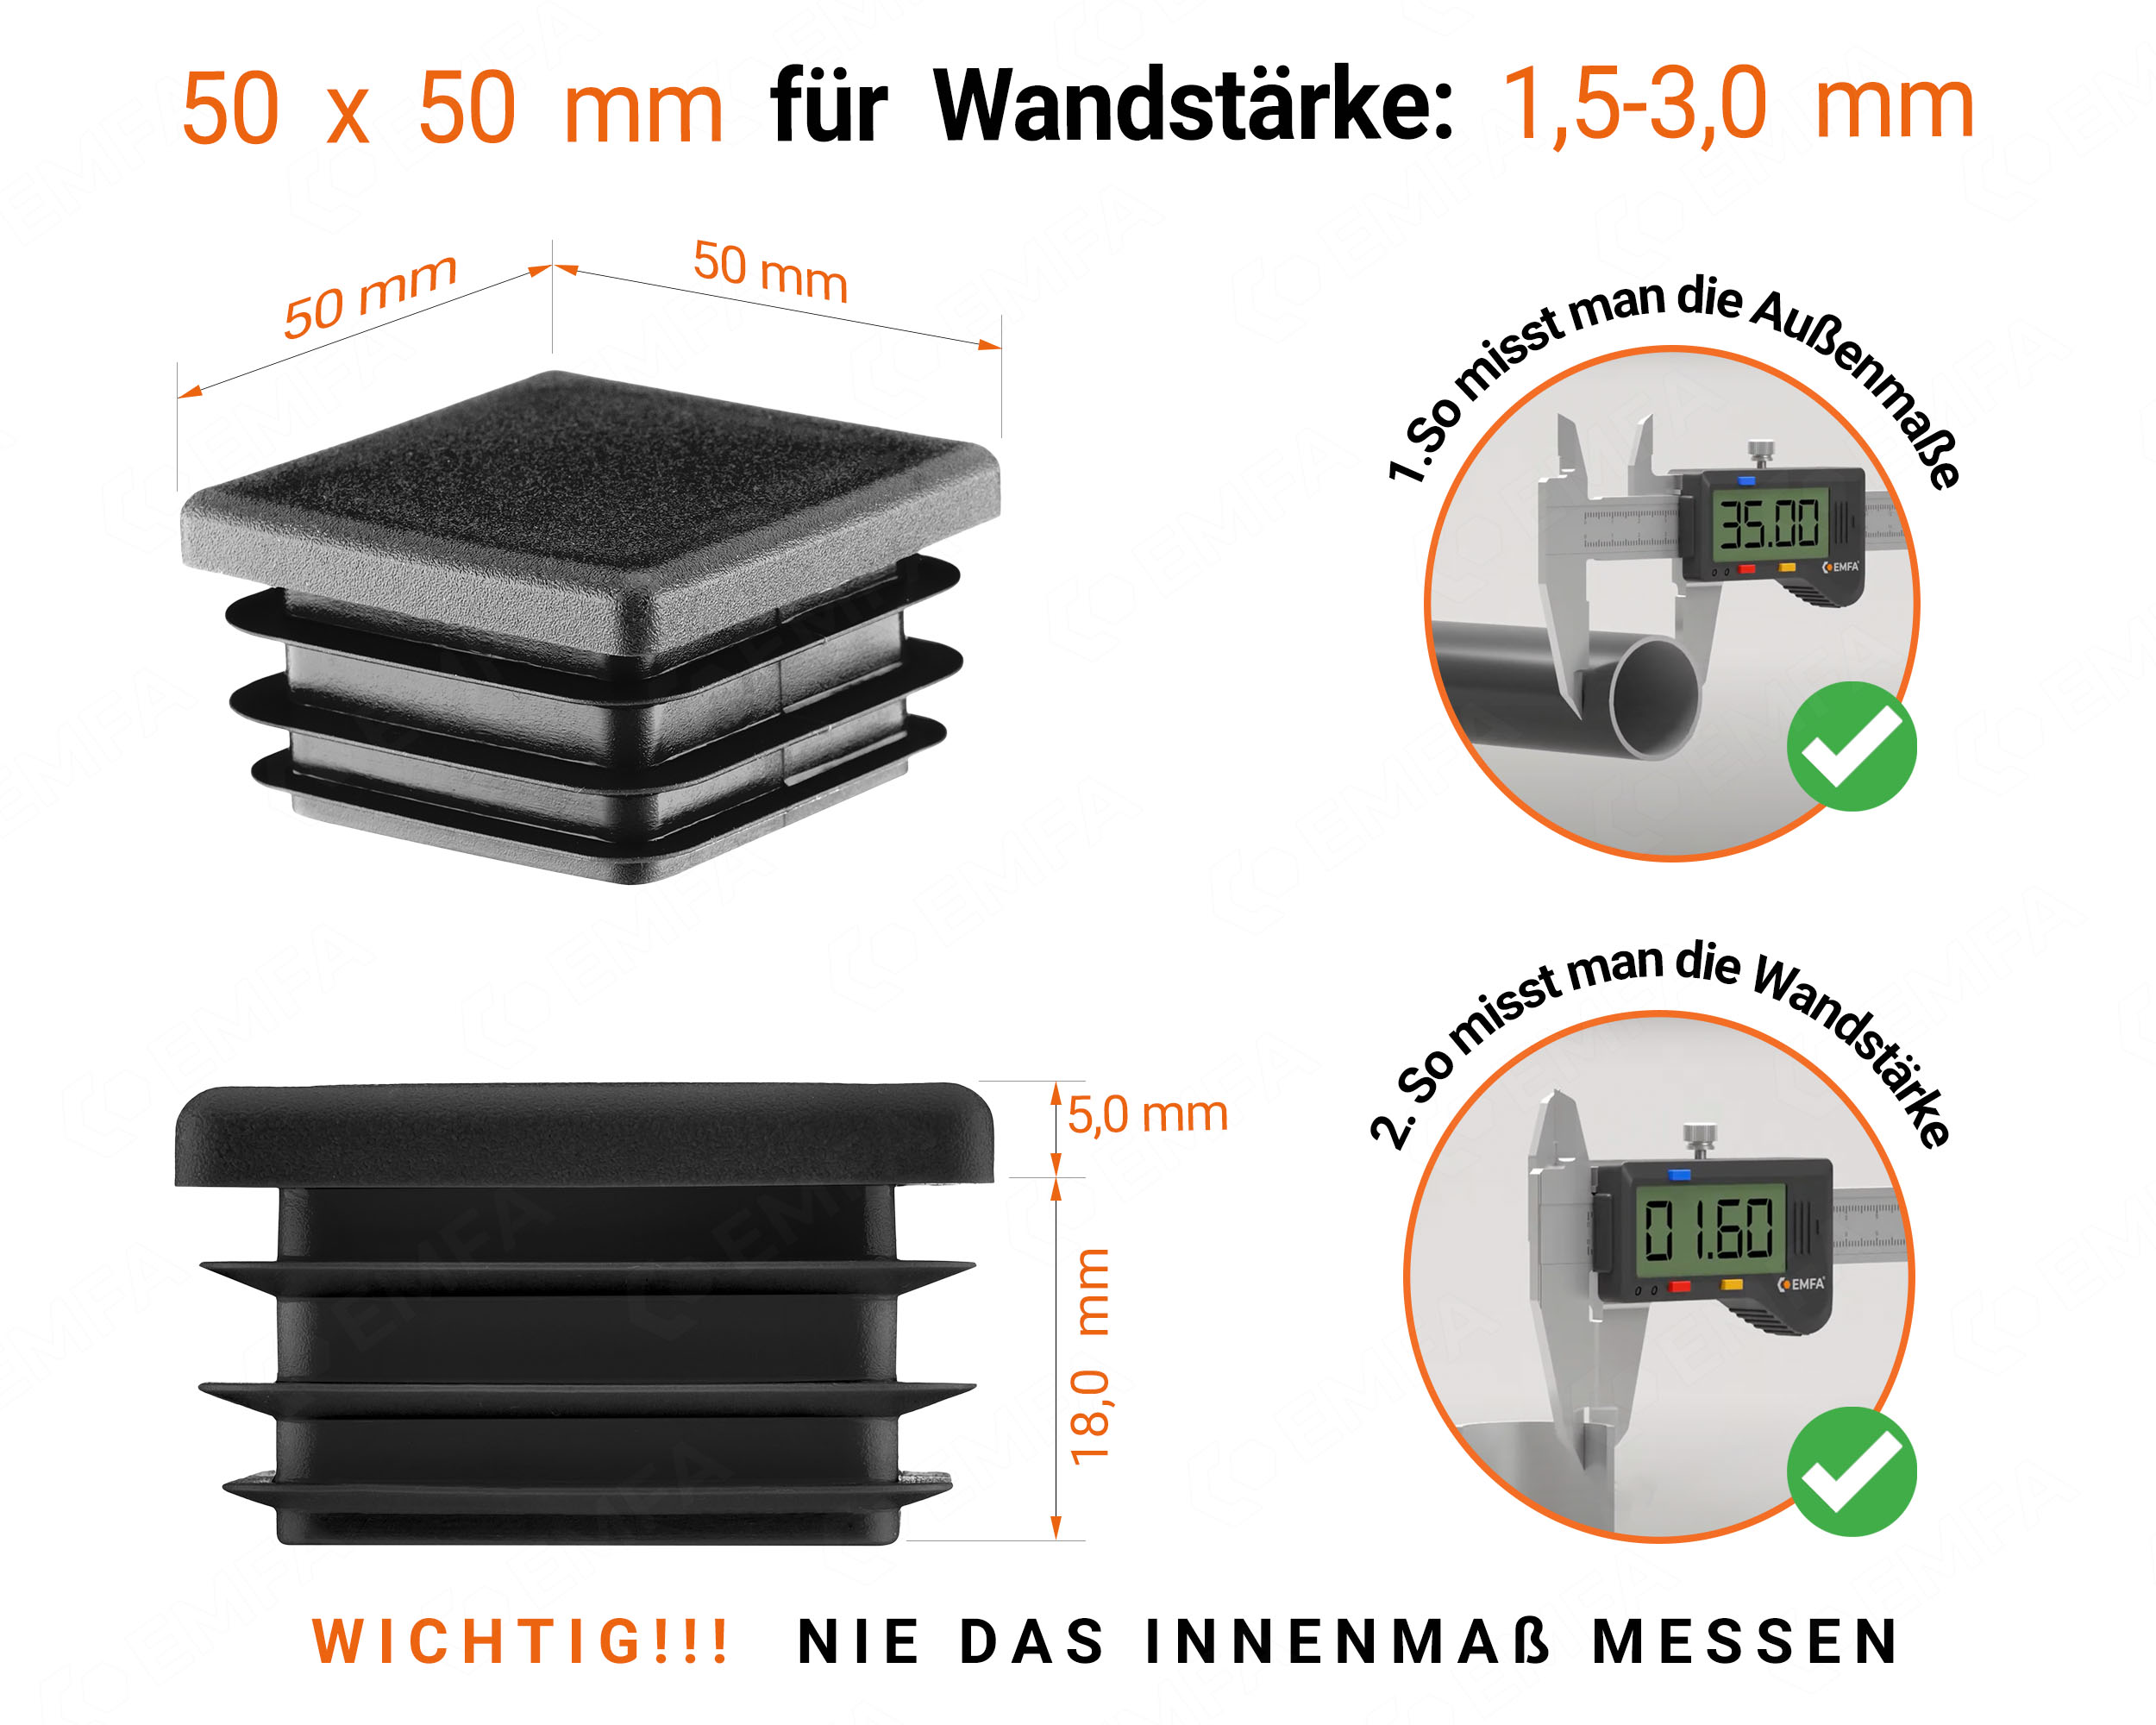 Schwarze Endkappe für Vierkantrohre in der Größe 50x50 mm mit technischen Abmessungen und Anleitung für korrekte Messung